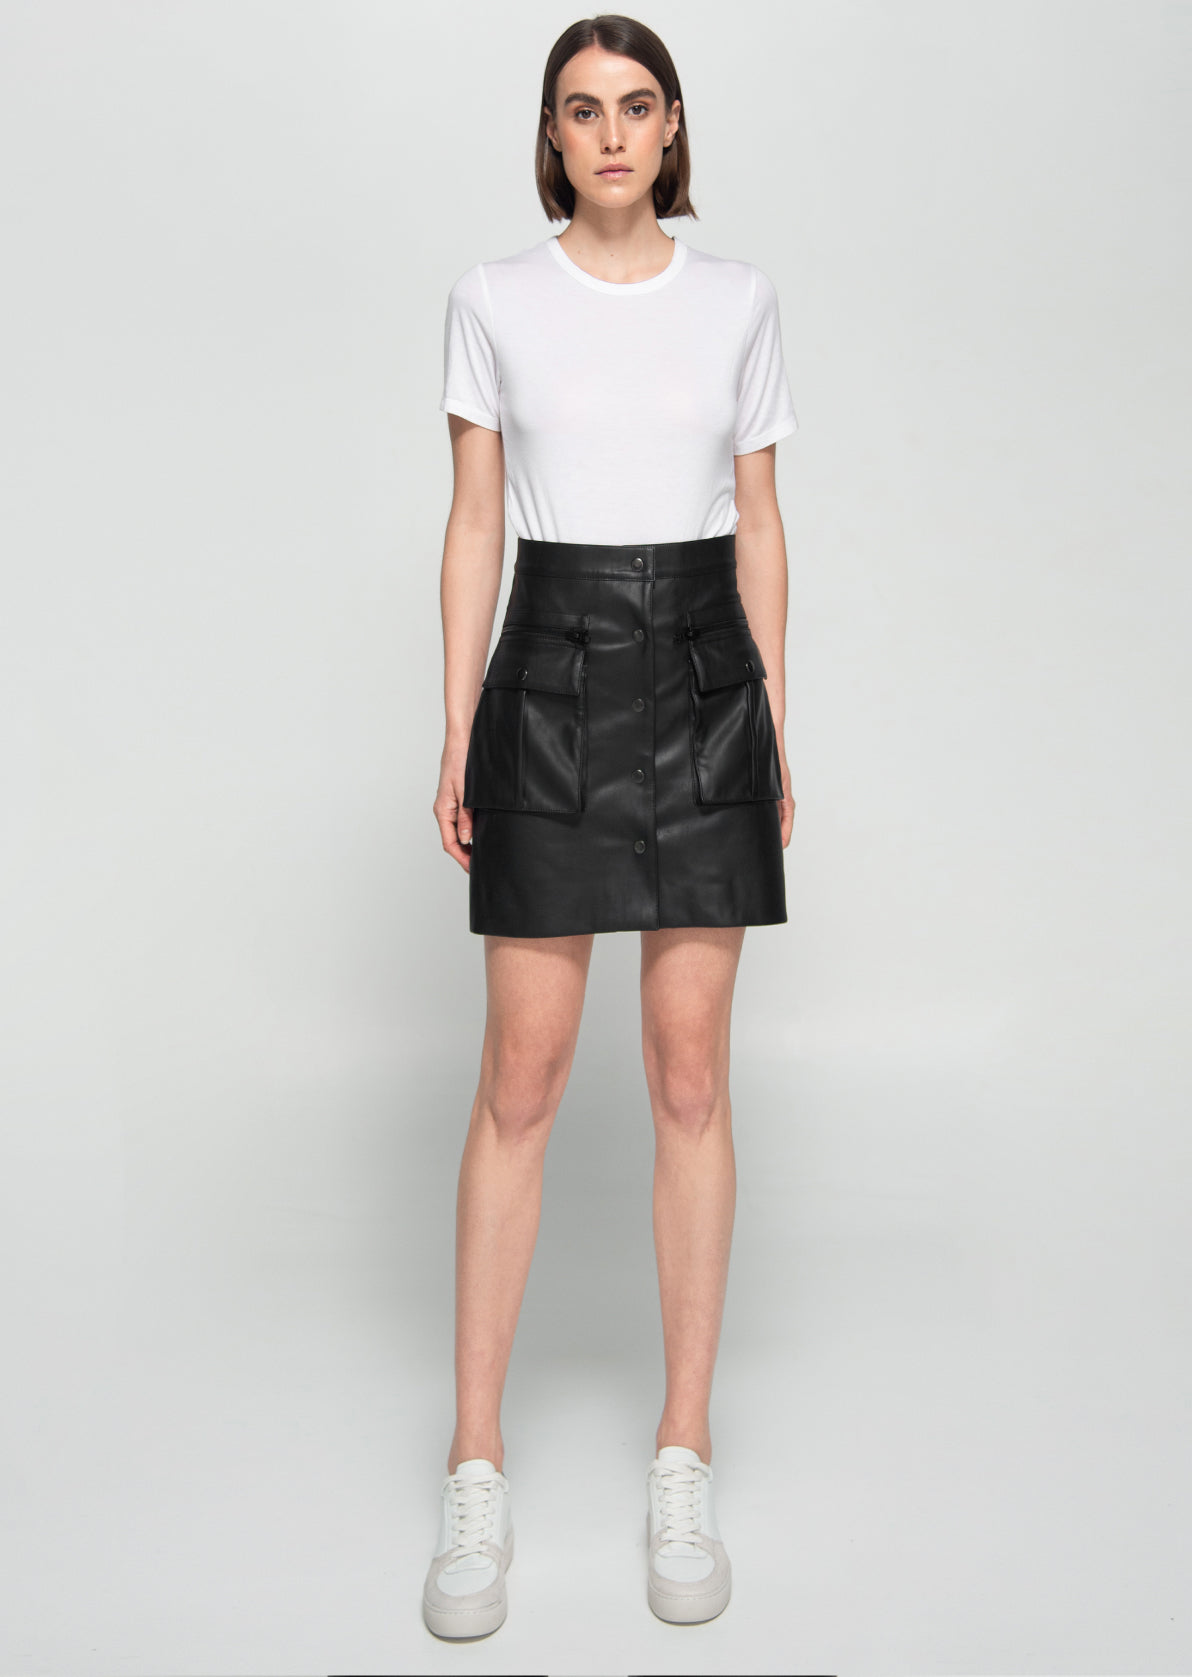 Jane Skirt -  Vegan Leather Skirt